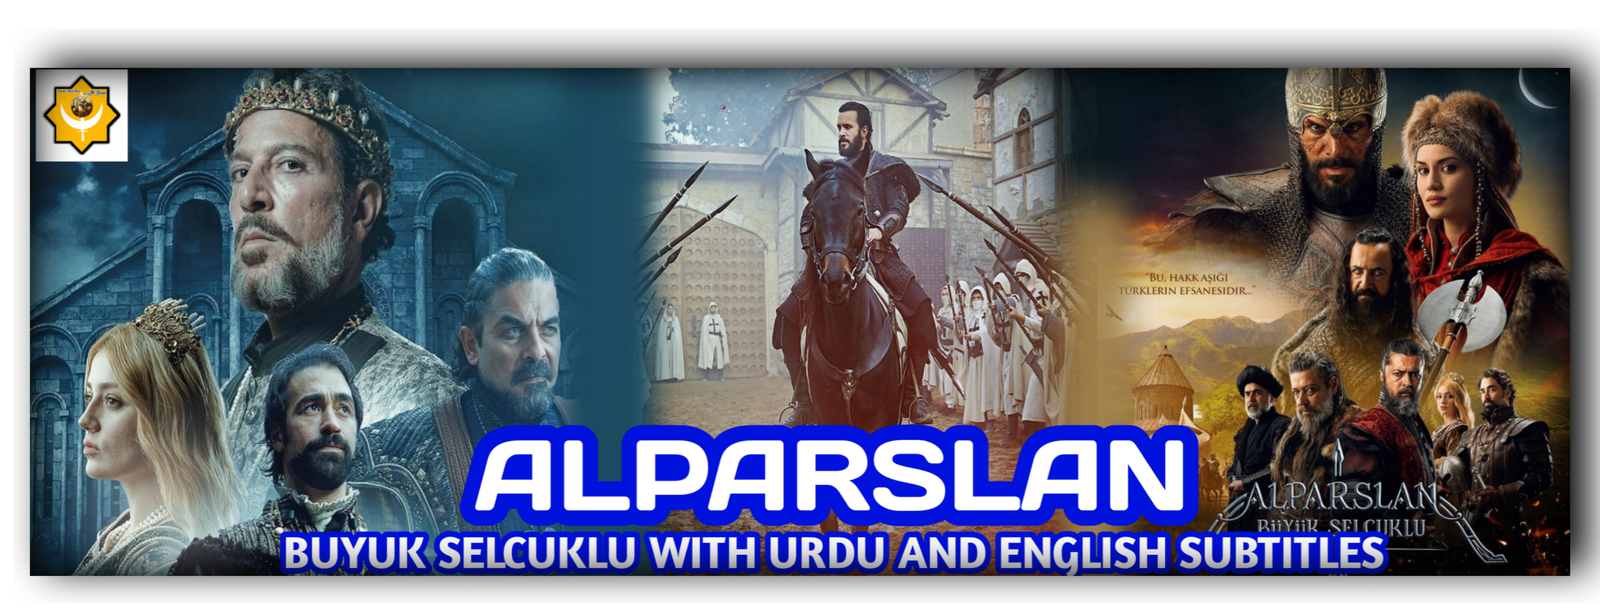 Alparsalan Urdu and English poster (1)